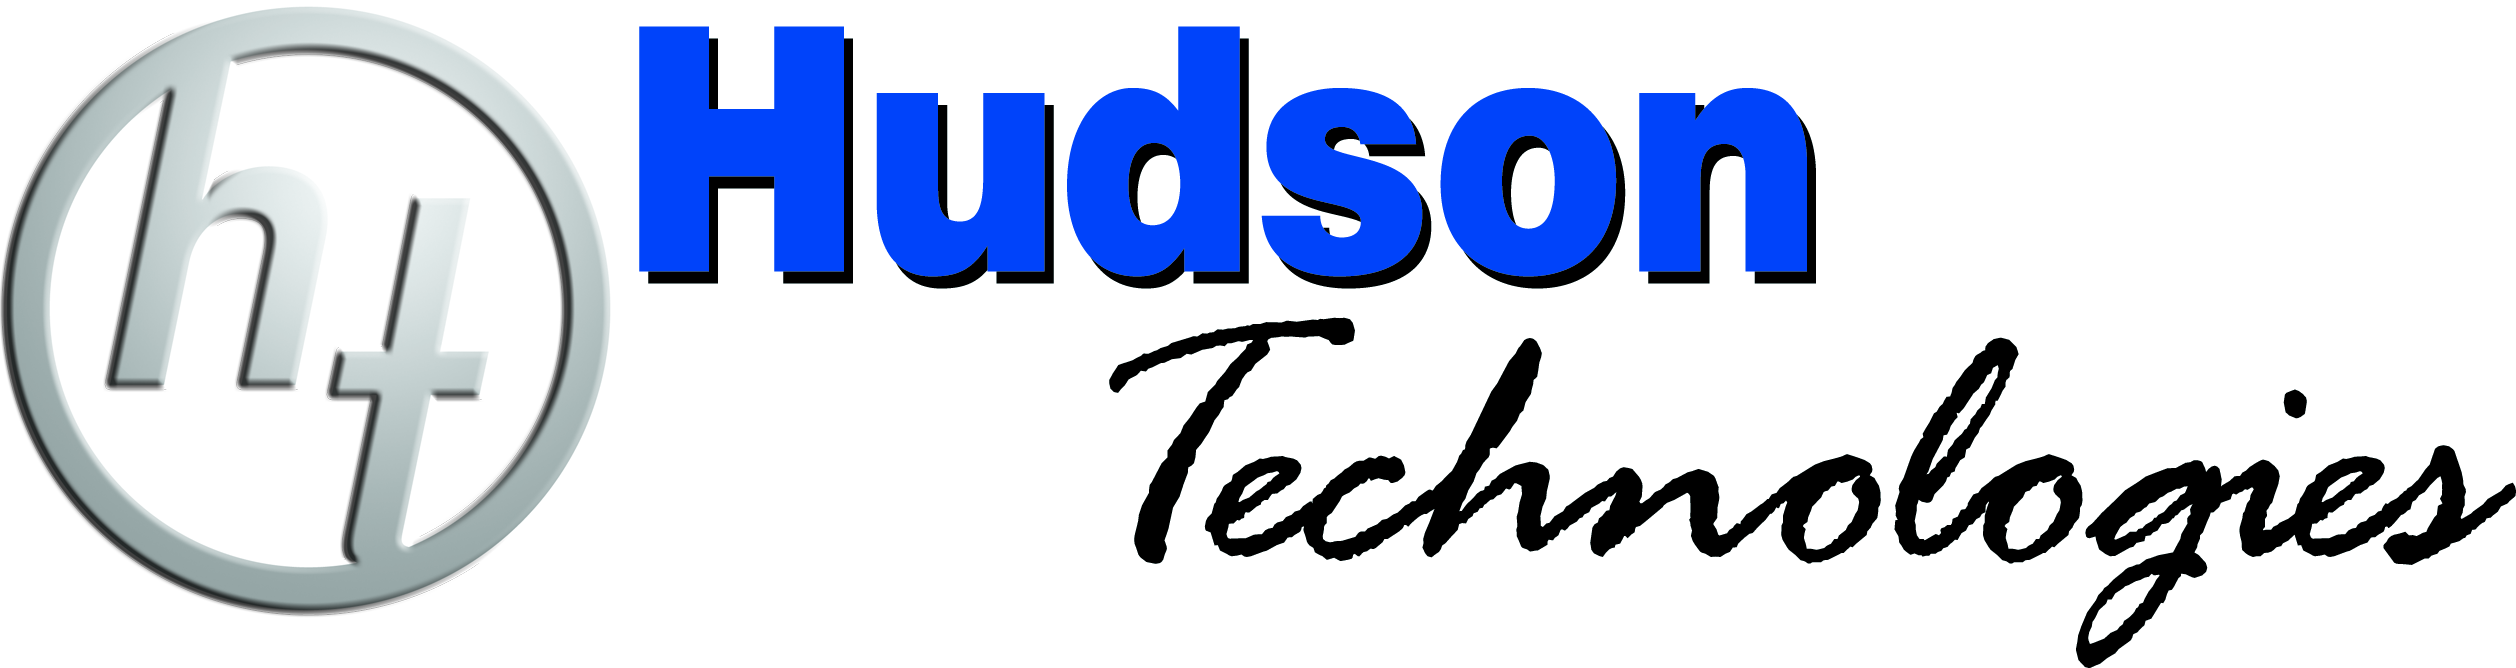 gold sponsor - Hudson Technologies logo